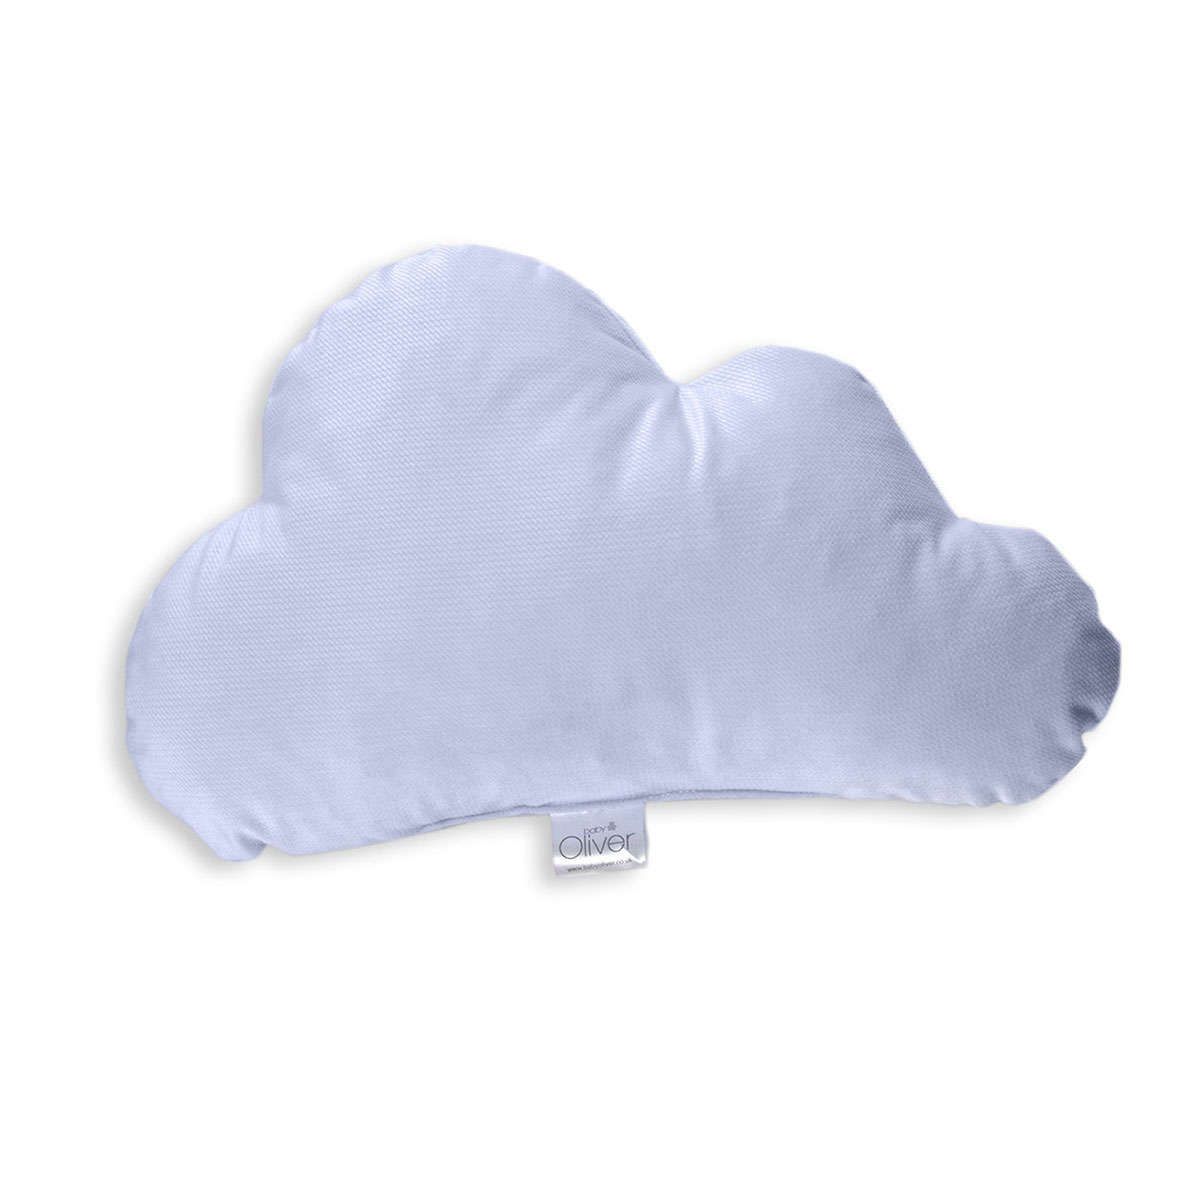 Διακοσμητικό μαξιλάρι βελουτέ Σύννεφο des.130 ciel baby oliver